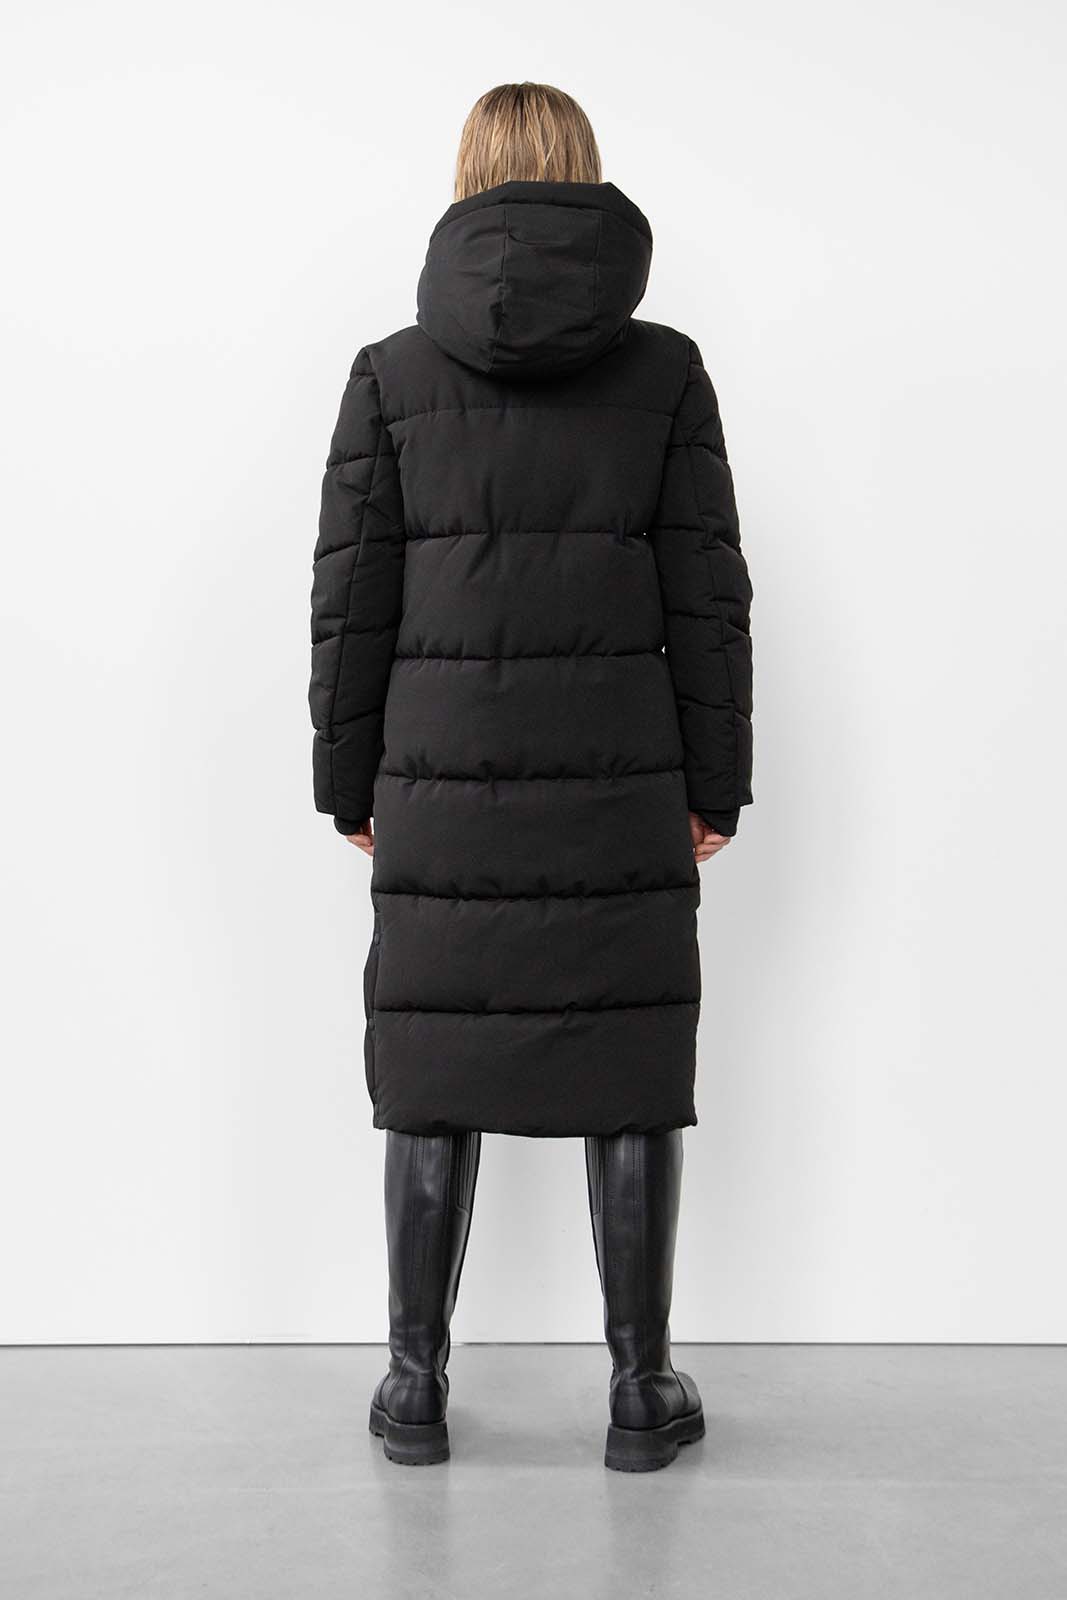 Glorian Long Puffer Coat 337 Black